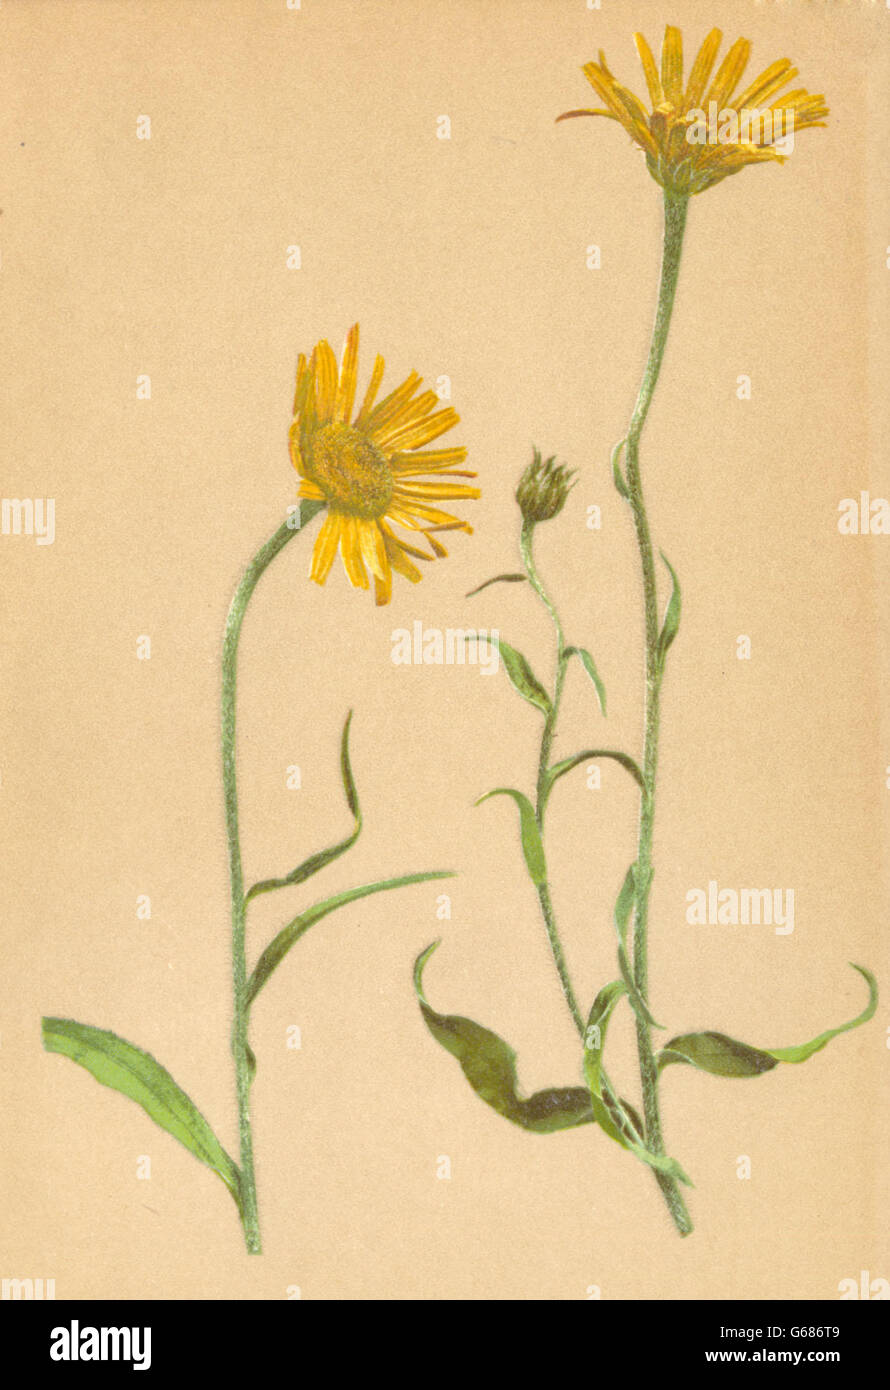 ALPINE FLOWERS: Buphthalmum salicifolium L-Weidenblättriges Rindsauge, 1897 Stock Photo